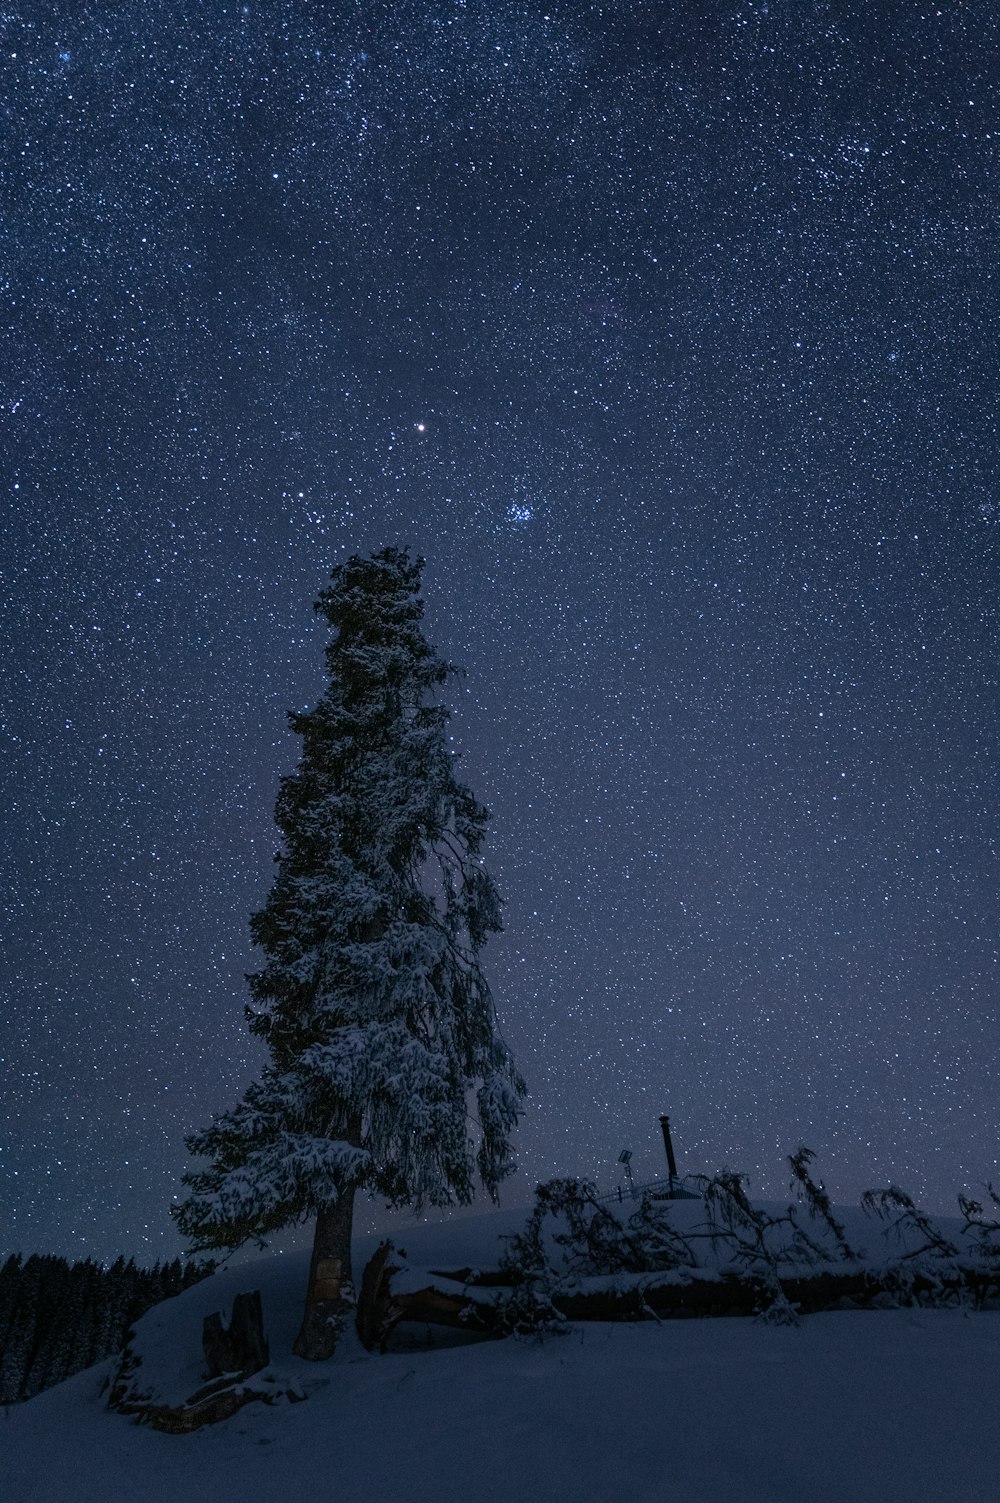 눈 덮인 나무 위에 별이 있는 밤하늘